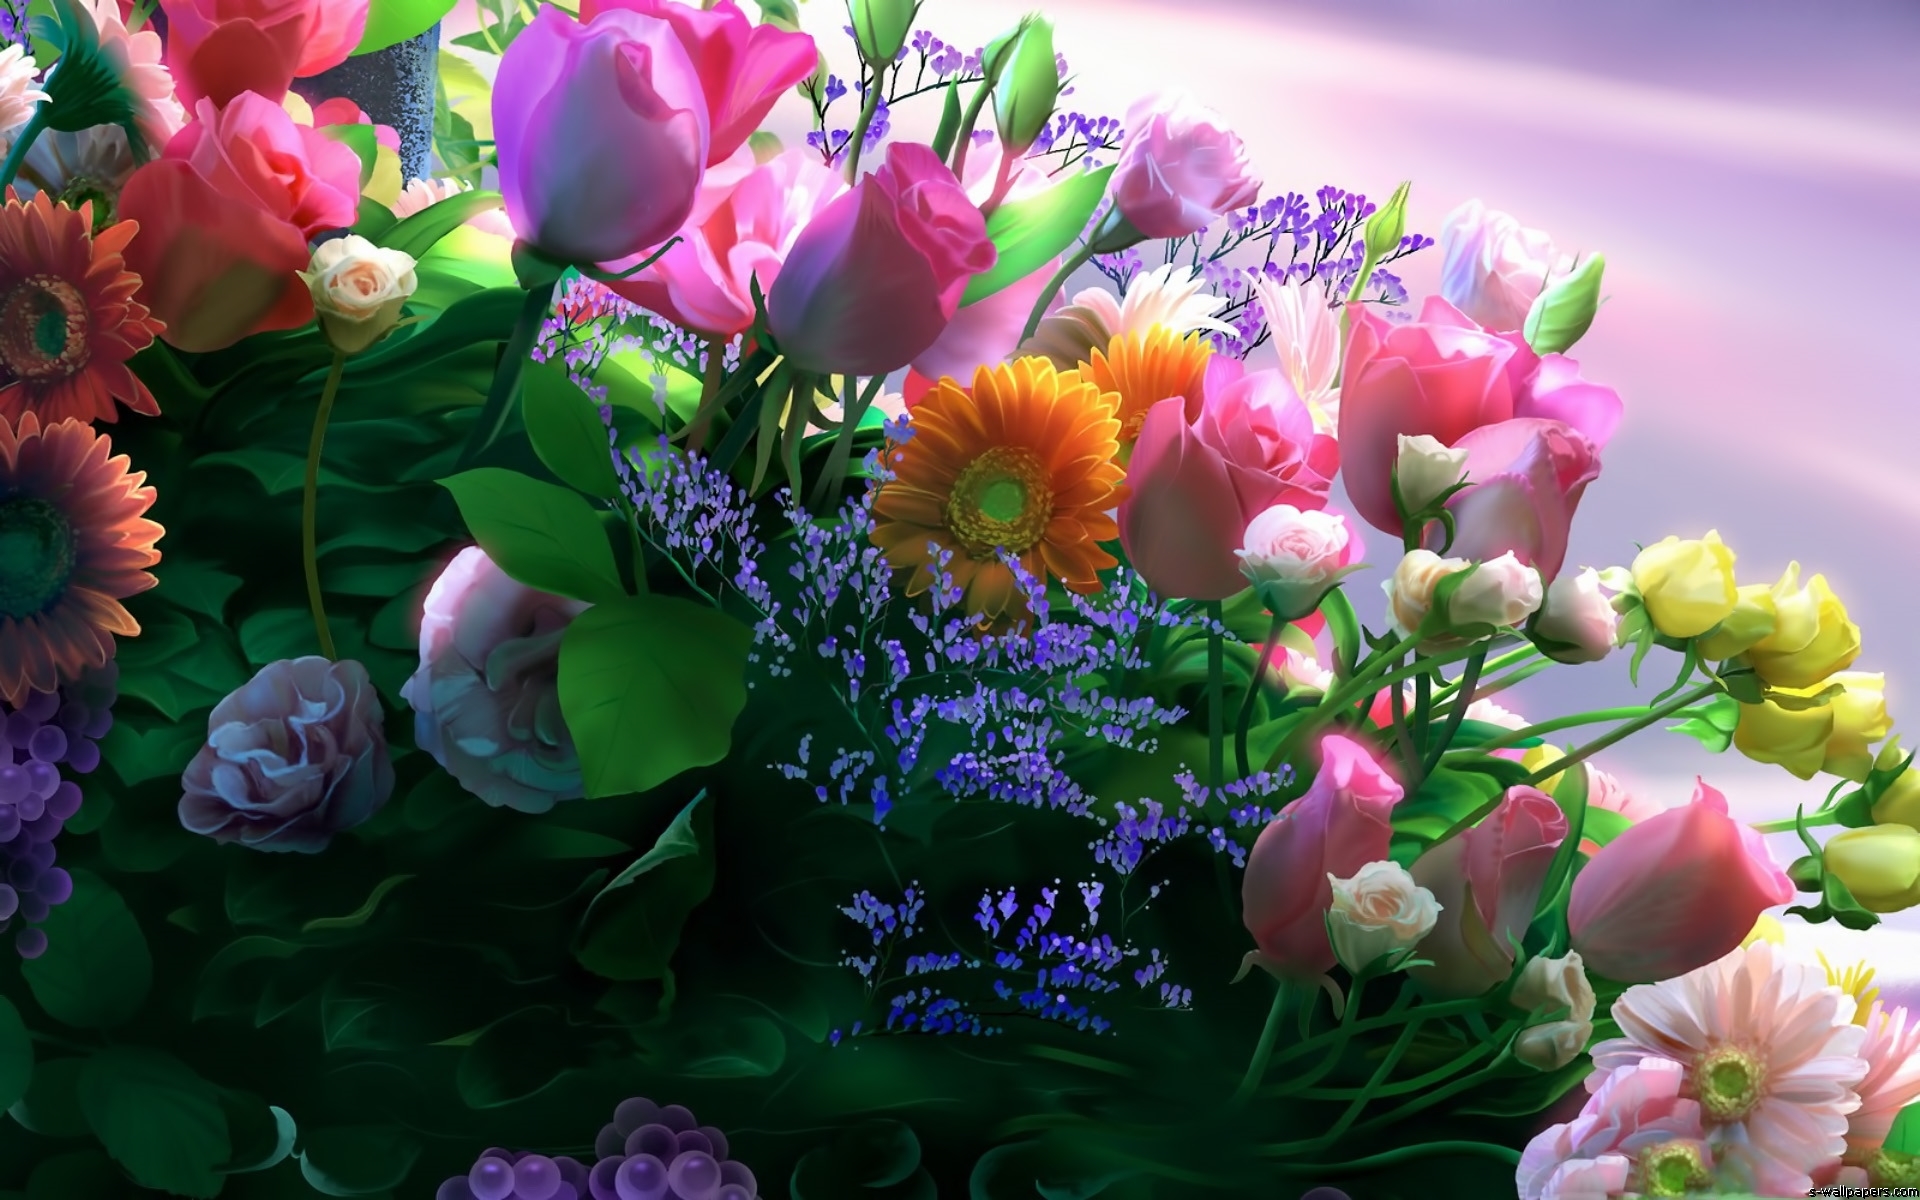 Скачать обои бесплатно Букеты, Цветы, Растения картинка на рабочий стол ПК